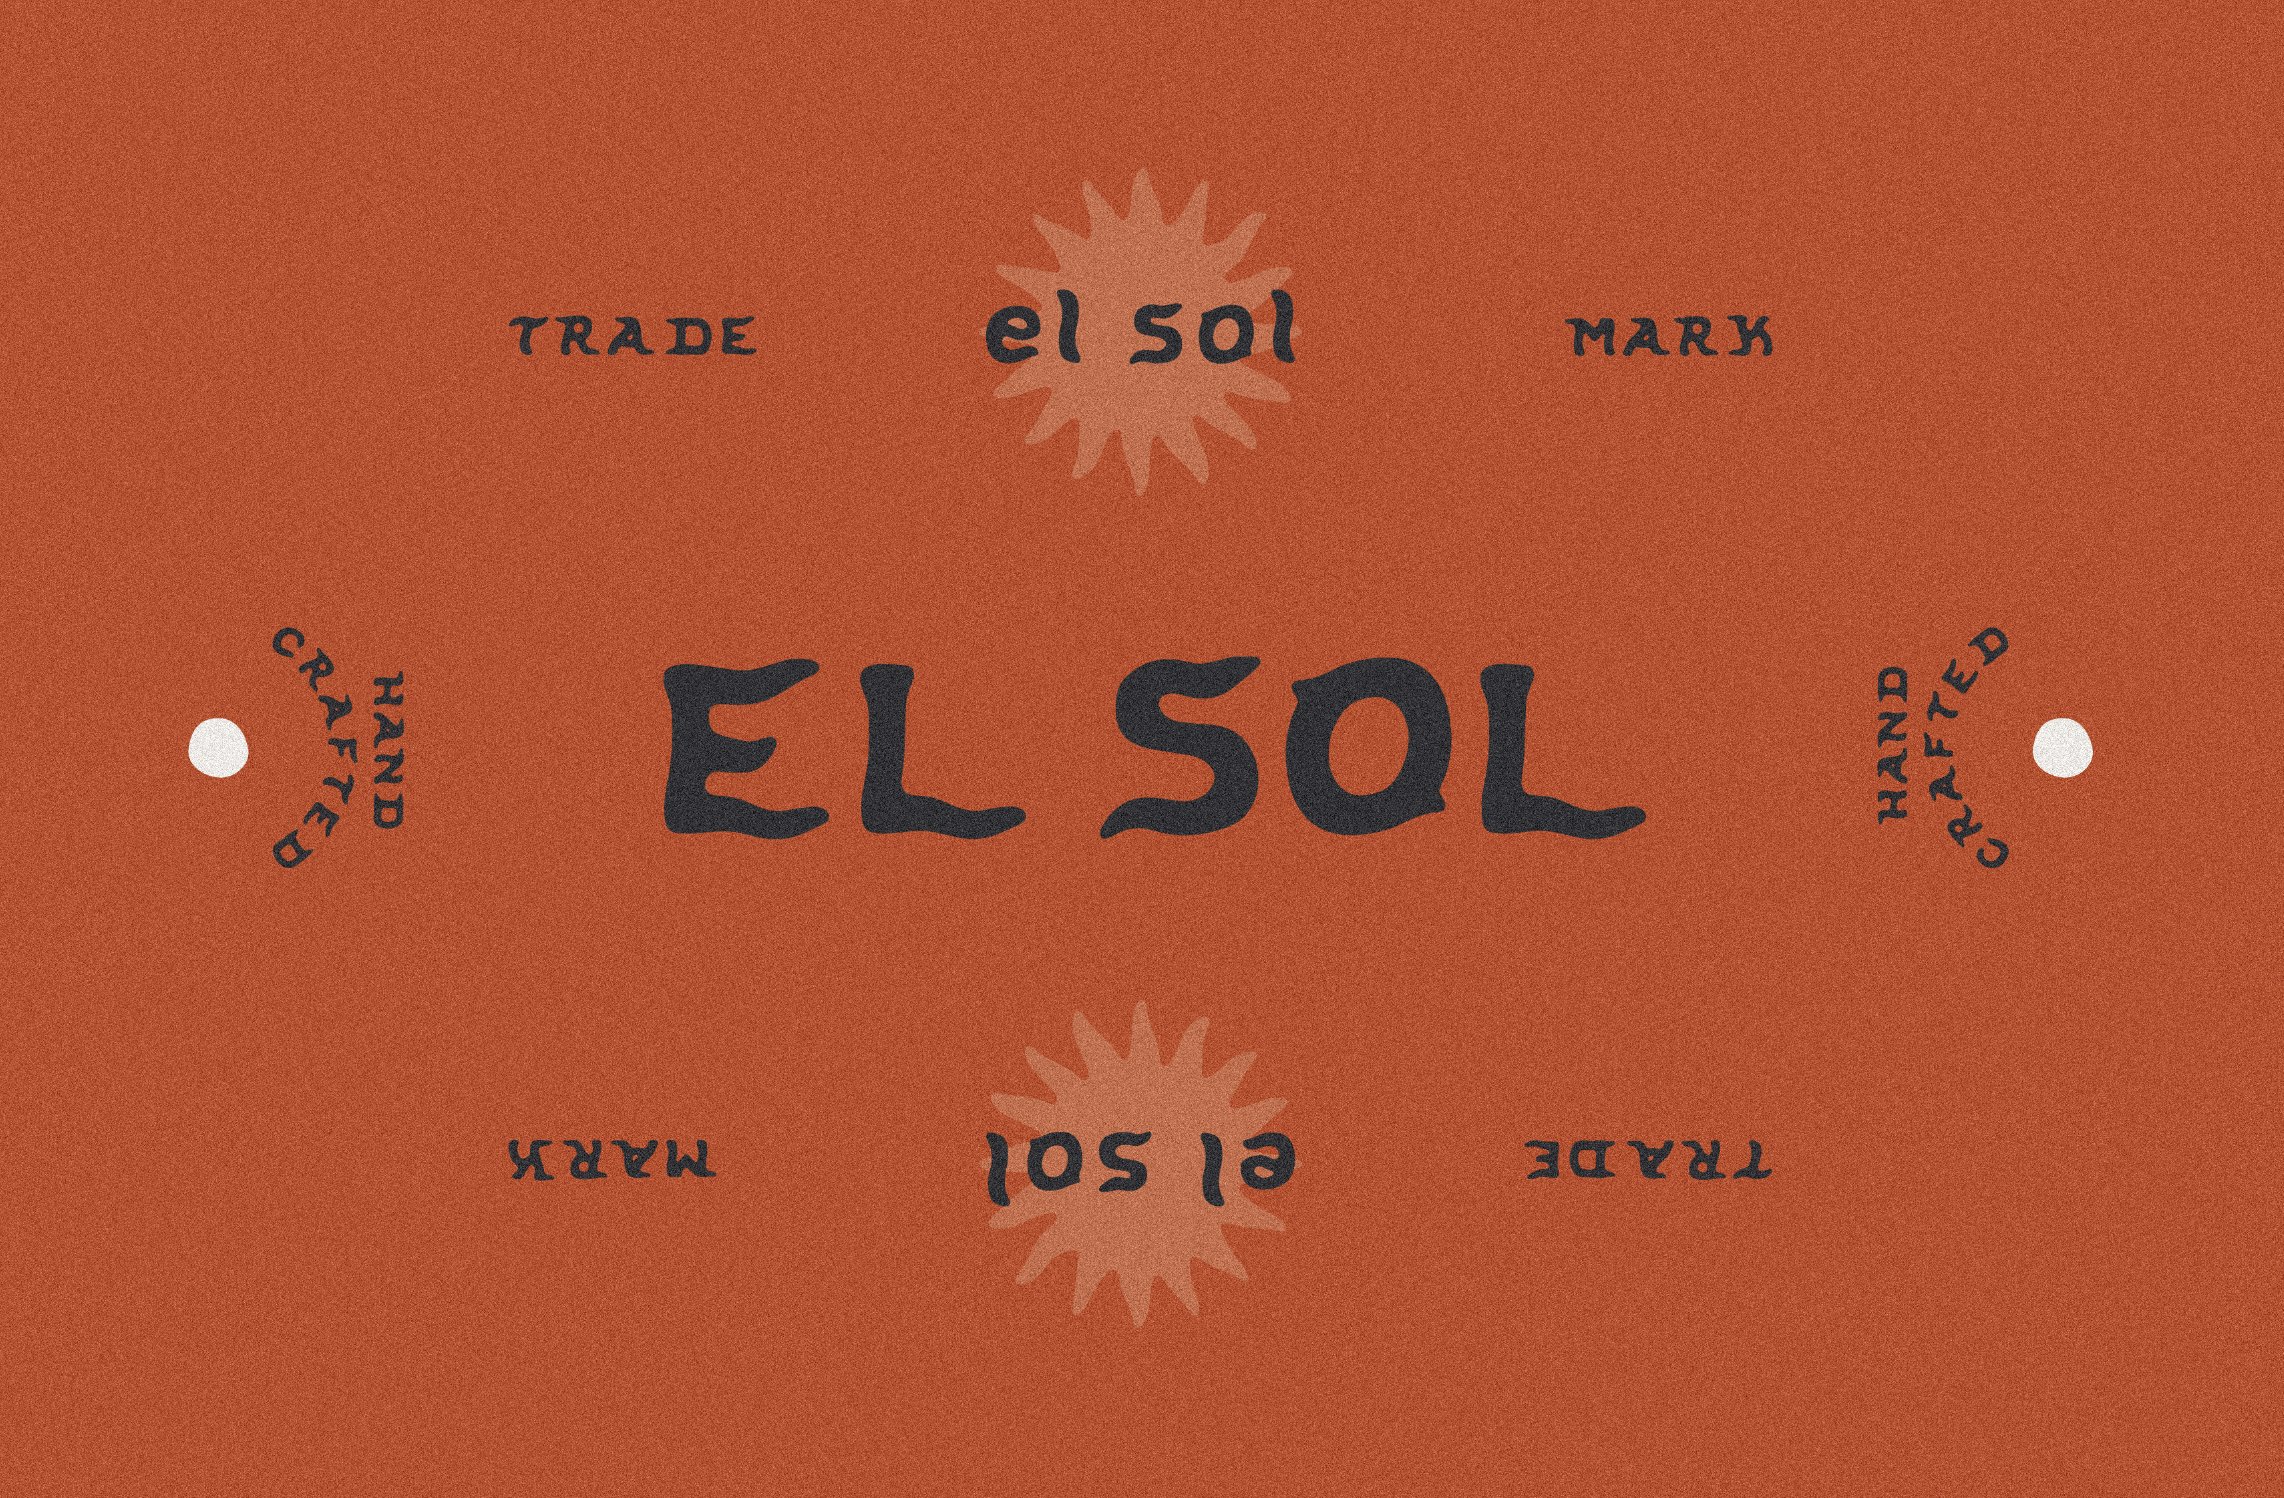 El Sol cover image.